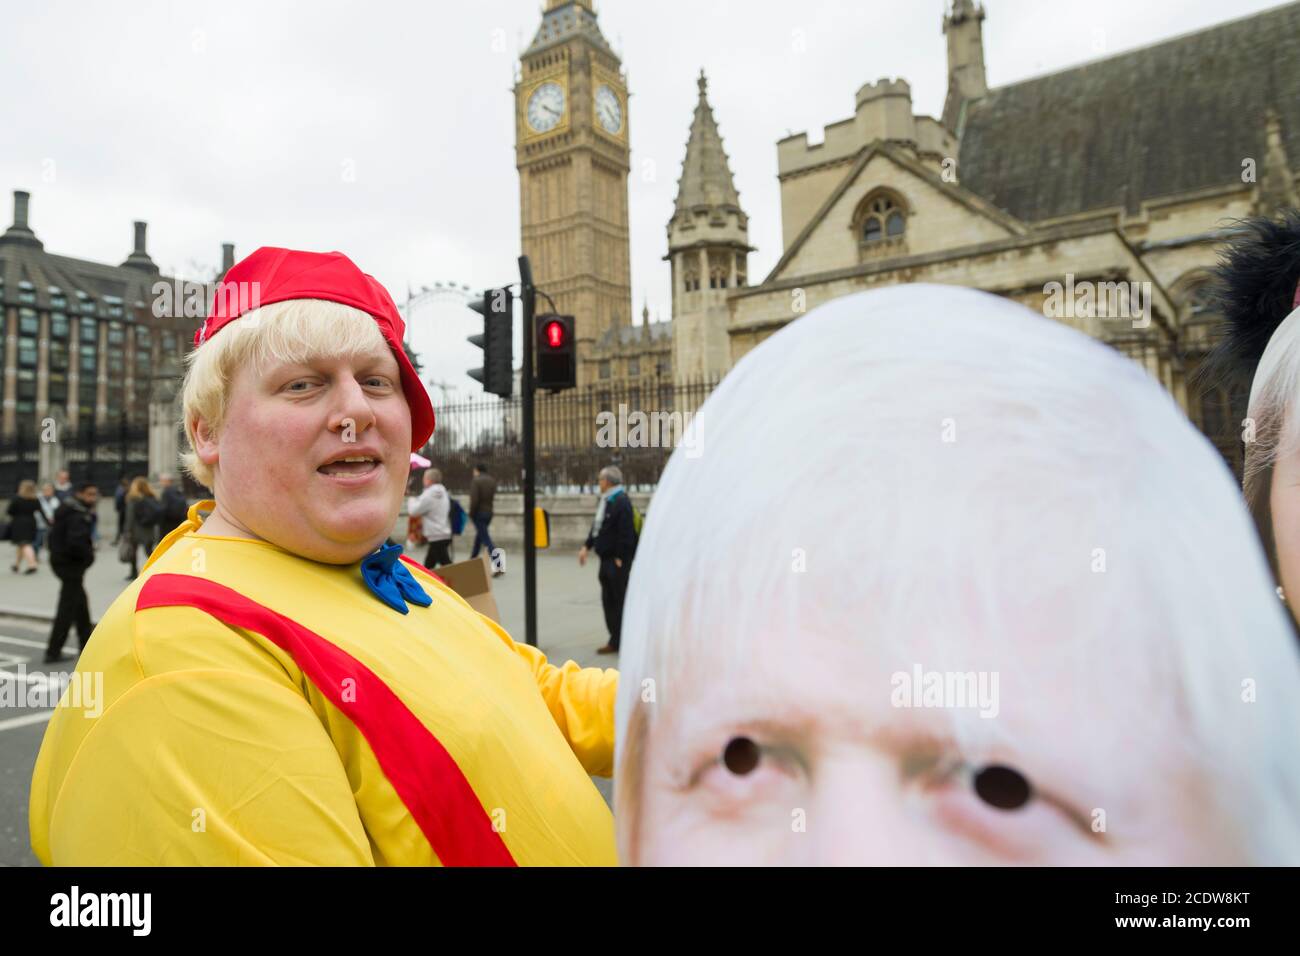 Les manifestants anti-Brexit s'habillent comme des personnages du livre Alice in Wonderland avec une robe Boris Johnson ressemblant à celle de Tweedledum, devant les chambres du Parlement, pour protester contre l'annonce d'aujourd'hui de l'article 50 START, le début officiel du processus de 2 ans pour que la Grande-Bretagne quitte l'Union européenne. Chambres du Parlement, Londres, Royaume-Uni. 29 mars 2017 Banque D'Images